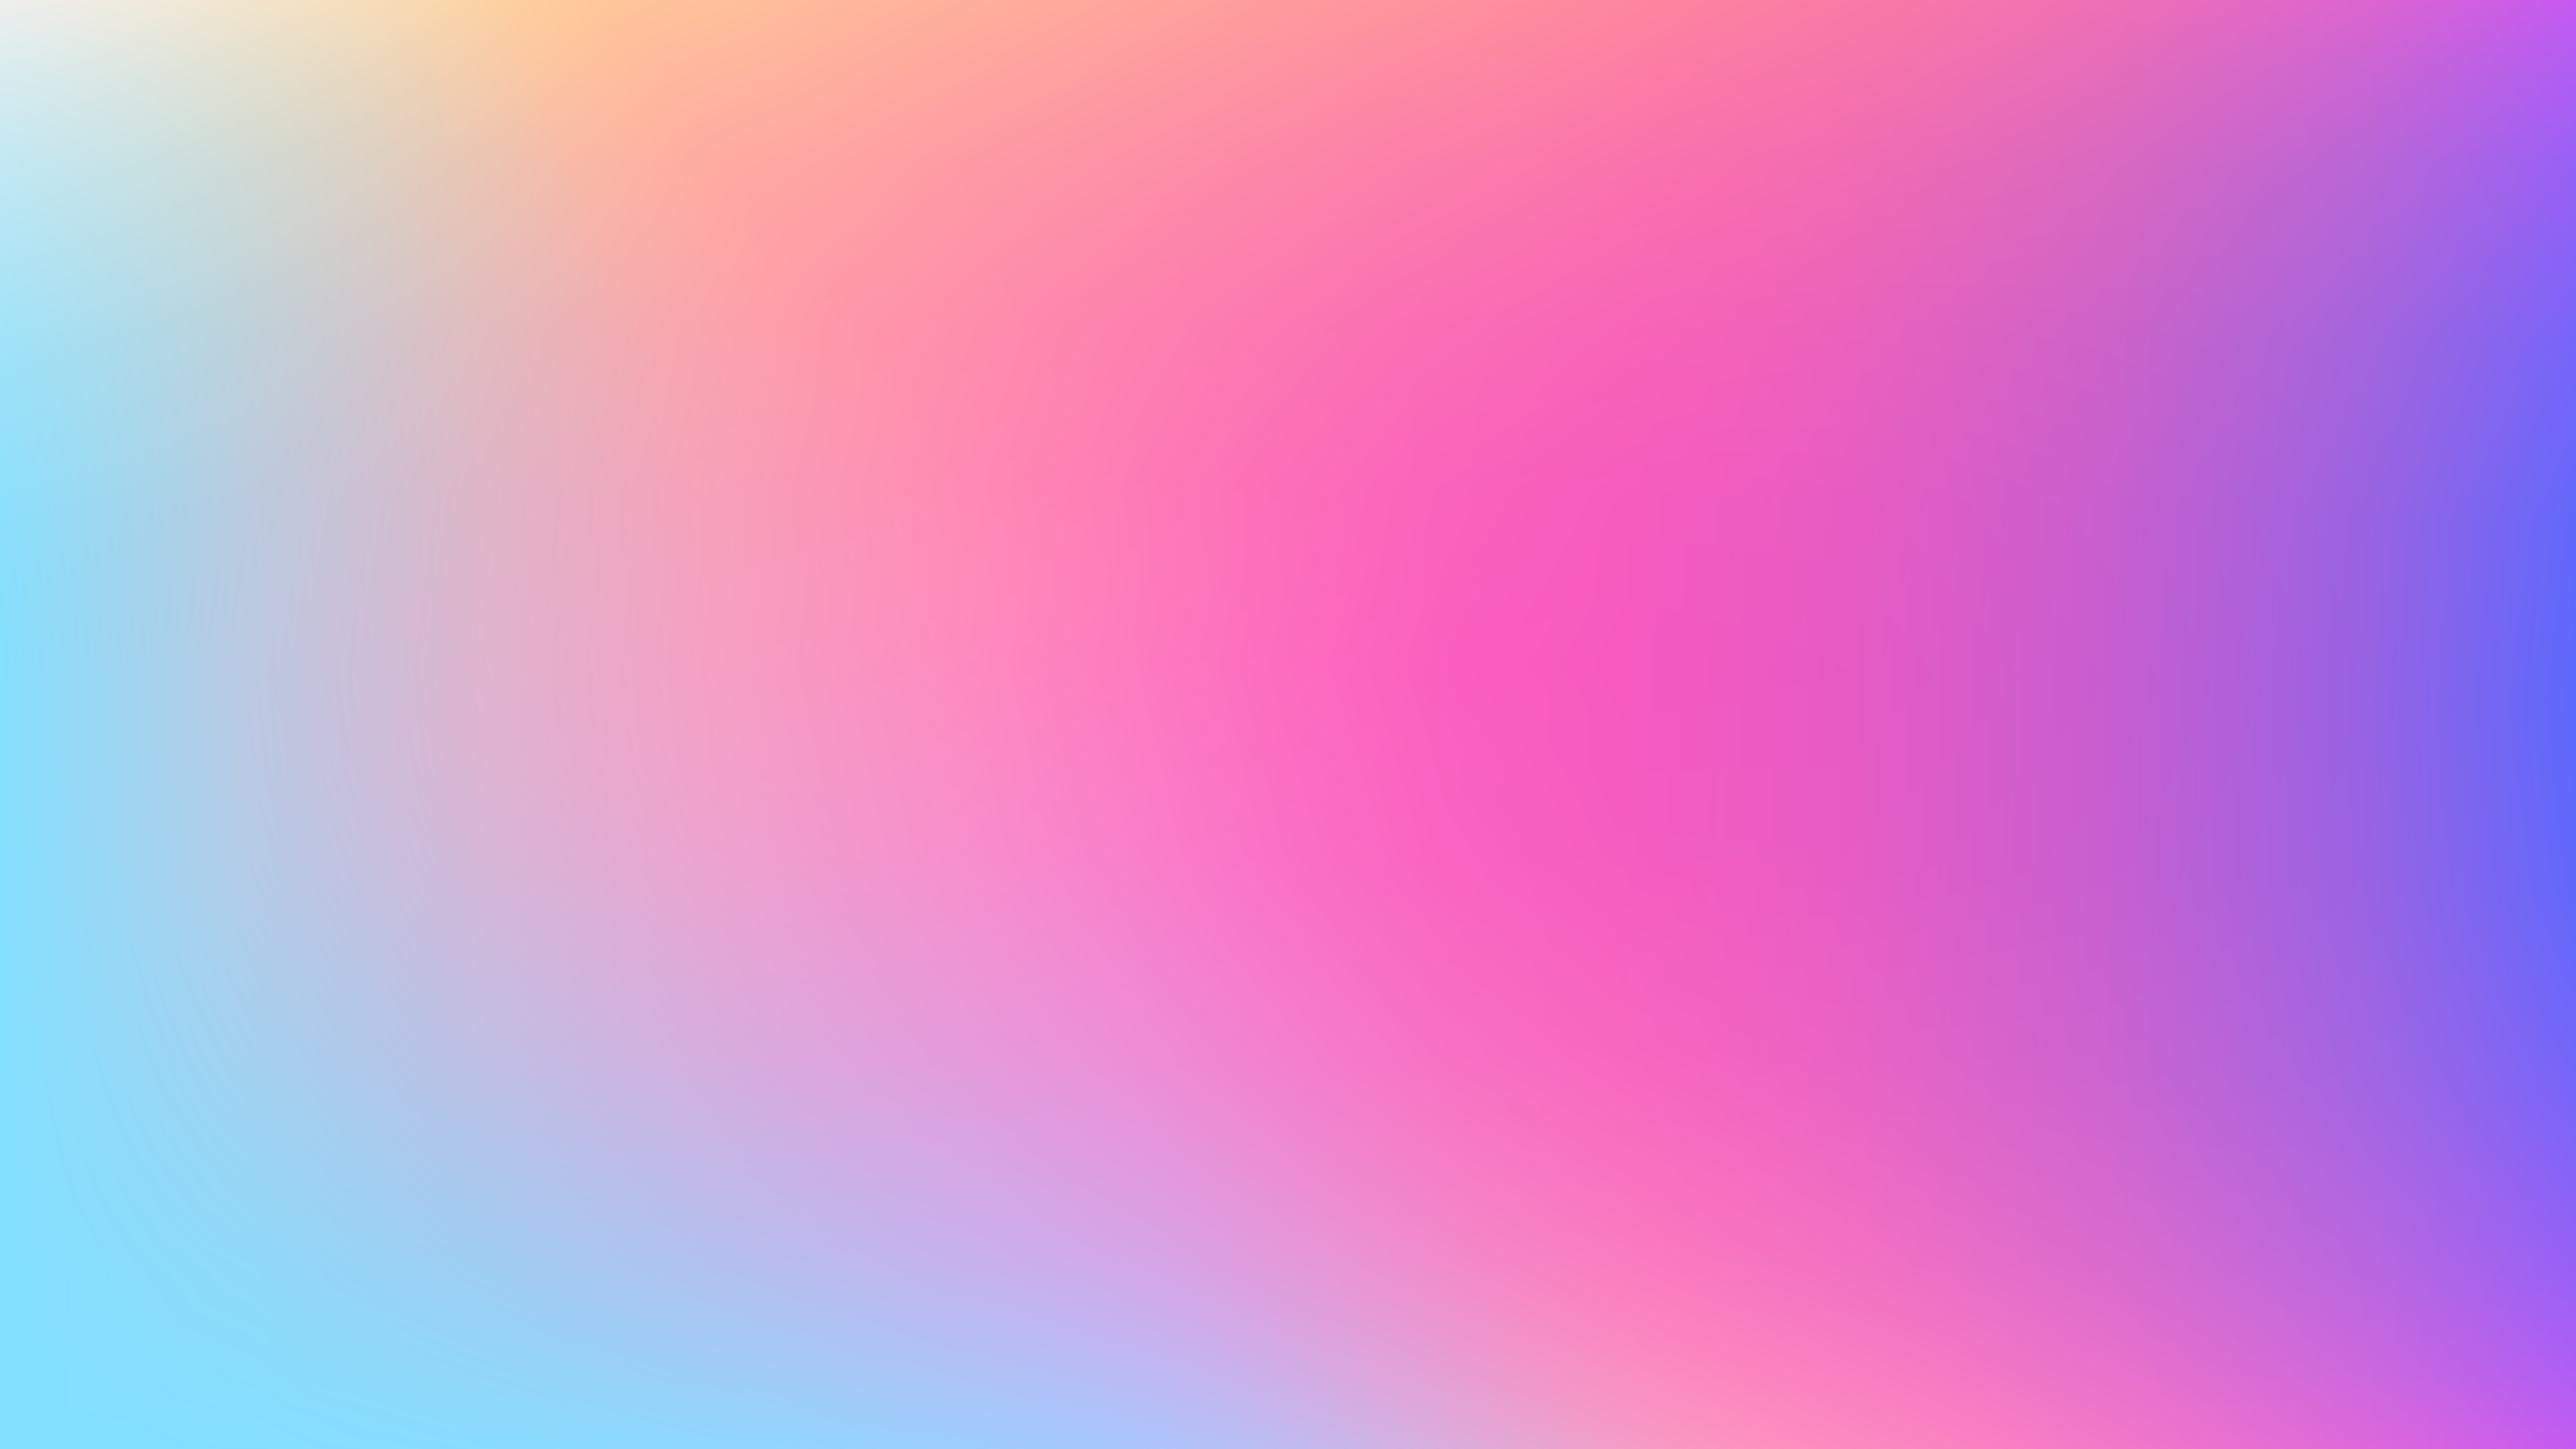 Khám phá những hình nền máy tính màu pastel gradient sạch sẽ 4K đẹp mắt trên màn hình của bạn. Với những hiệu ứng gradient tinh tế, bạn sẽ tận hưởng sự tràn đầy màu sắc cho thiết bị của mình.